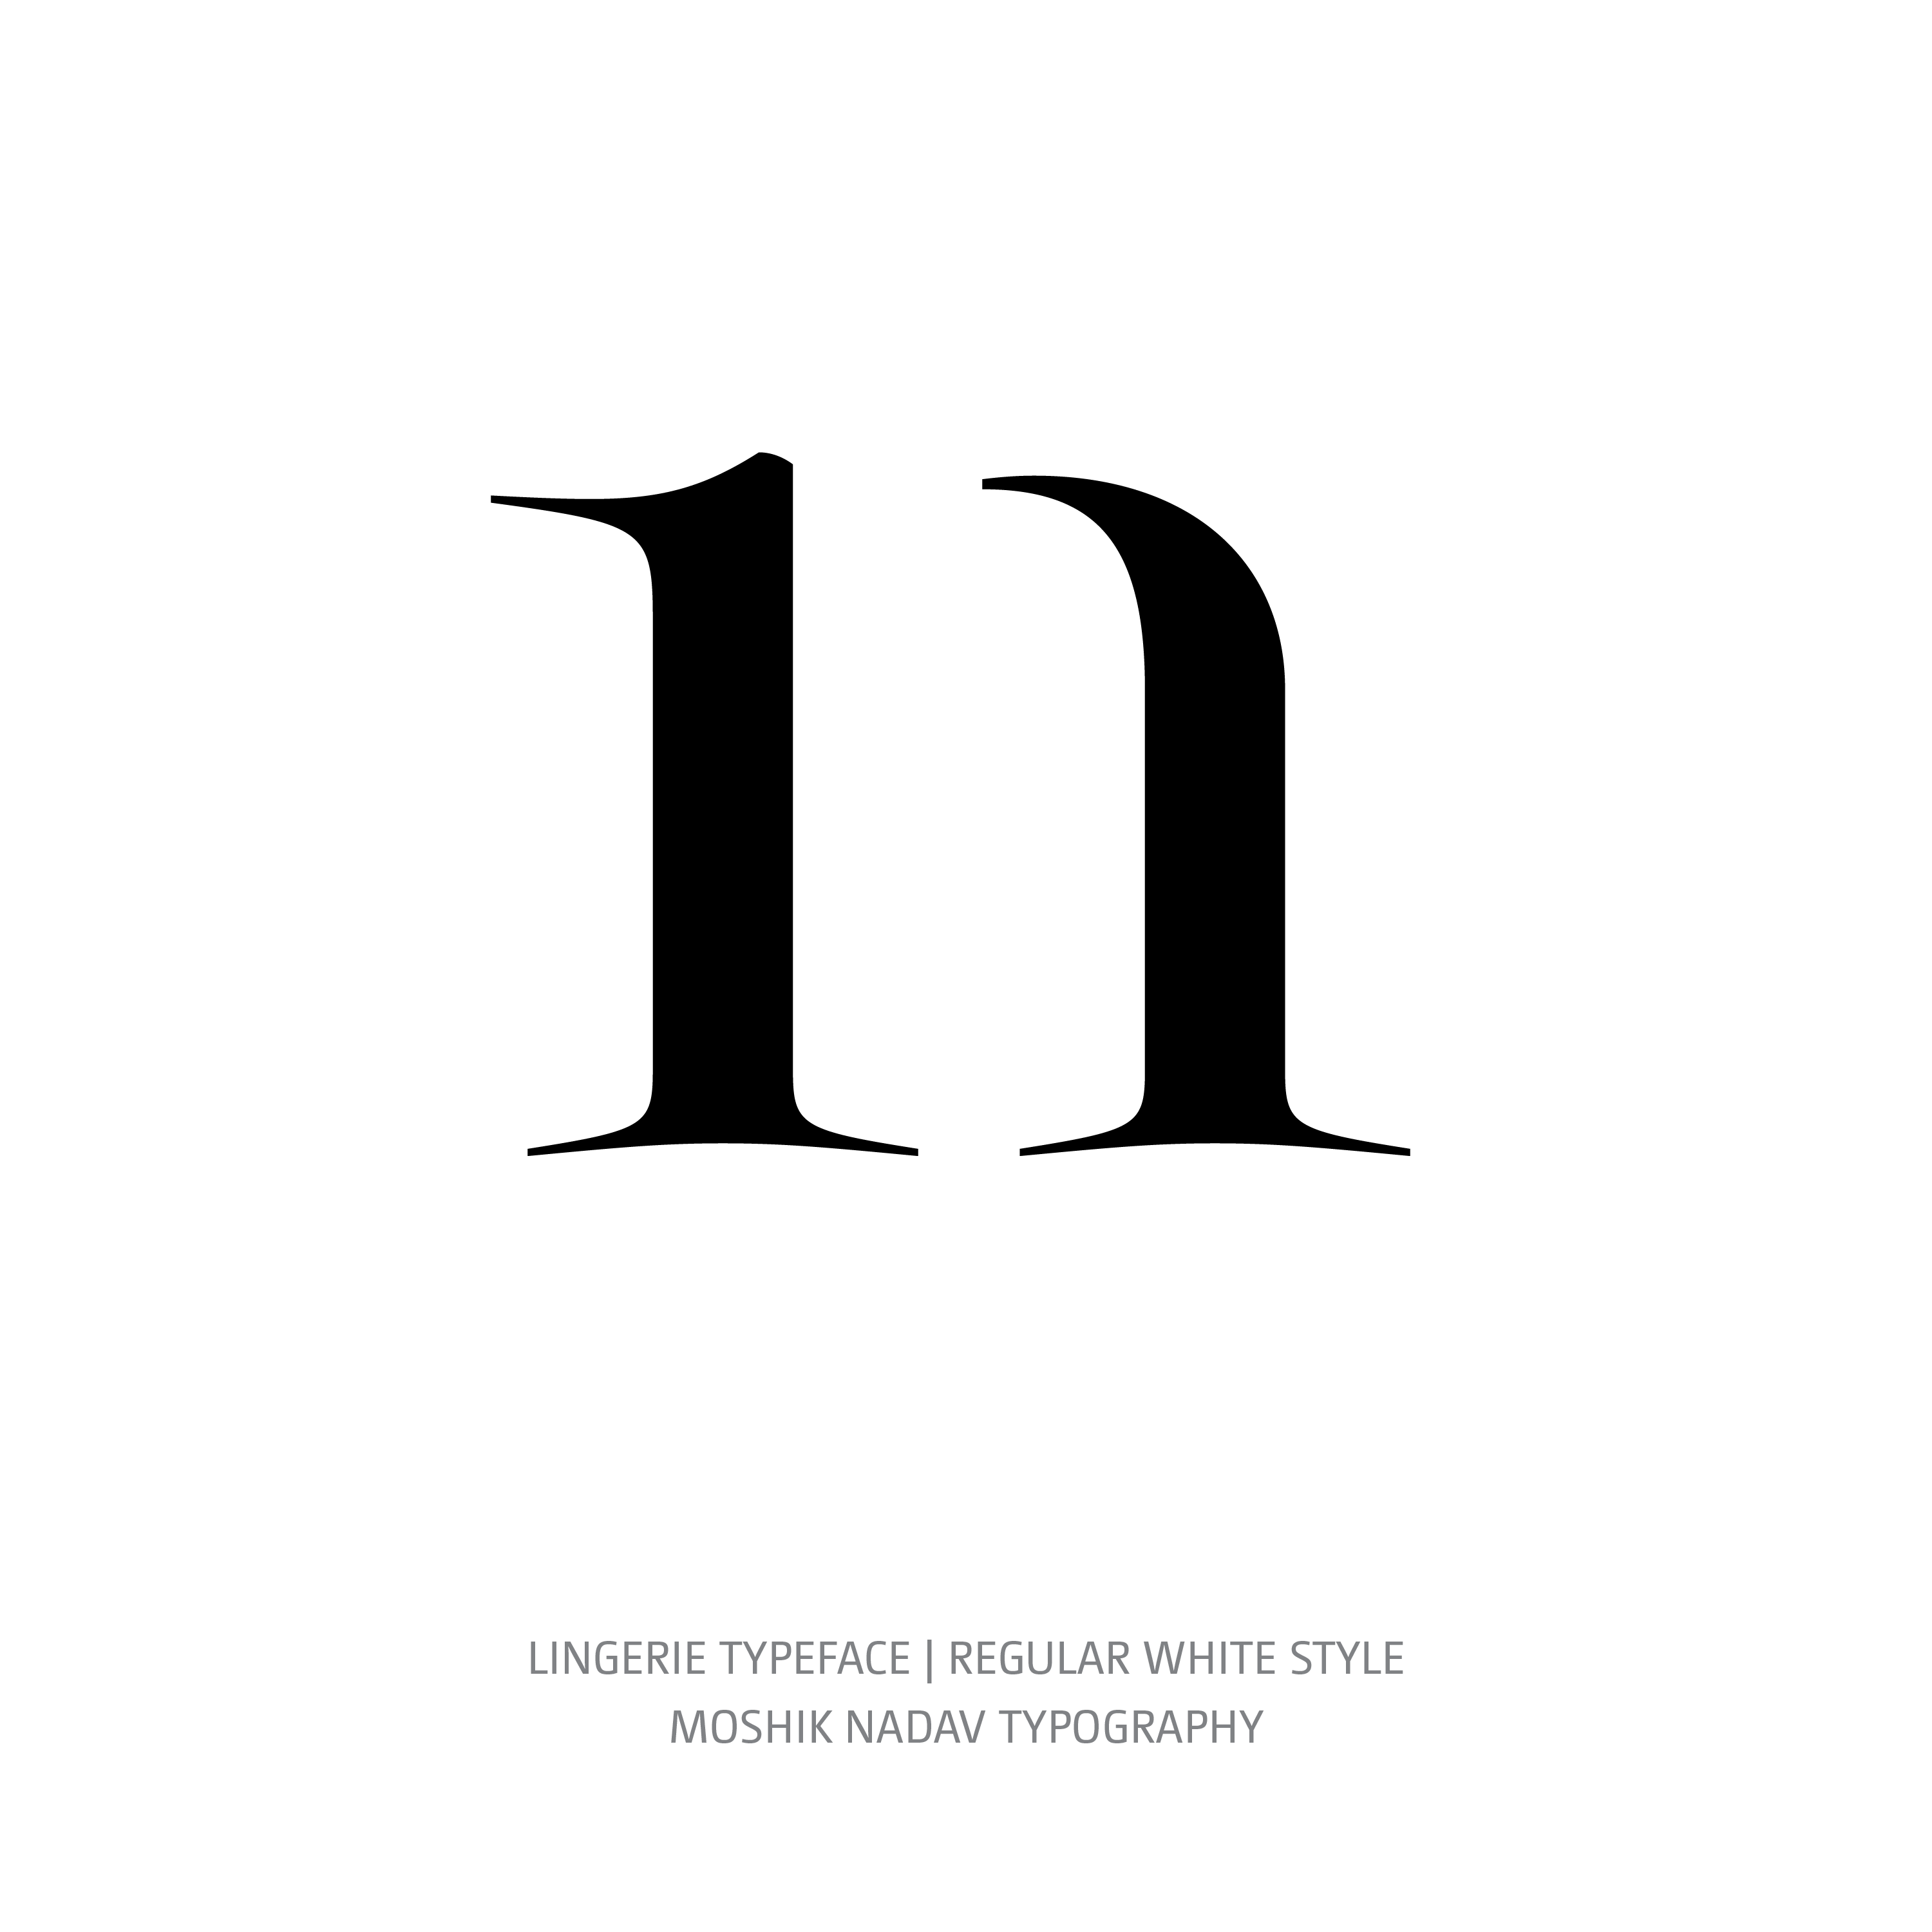 Lingerie Typeface Regular White n